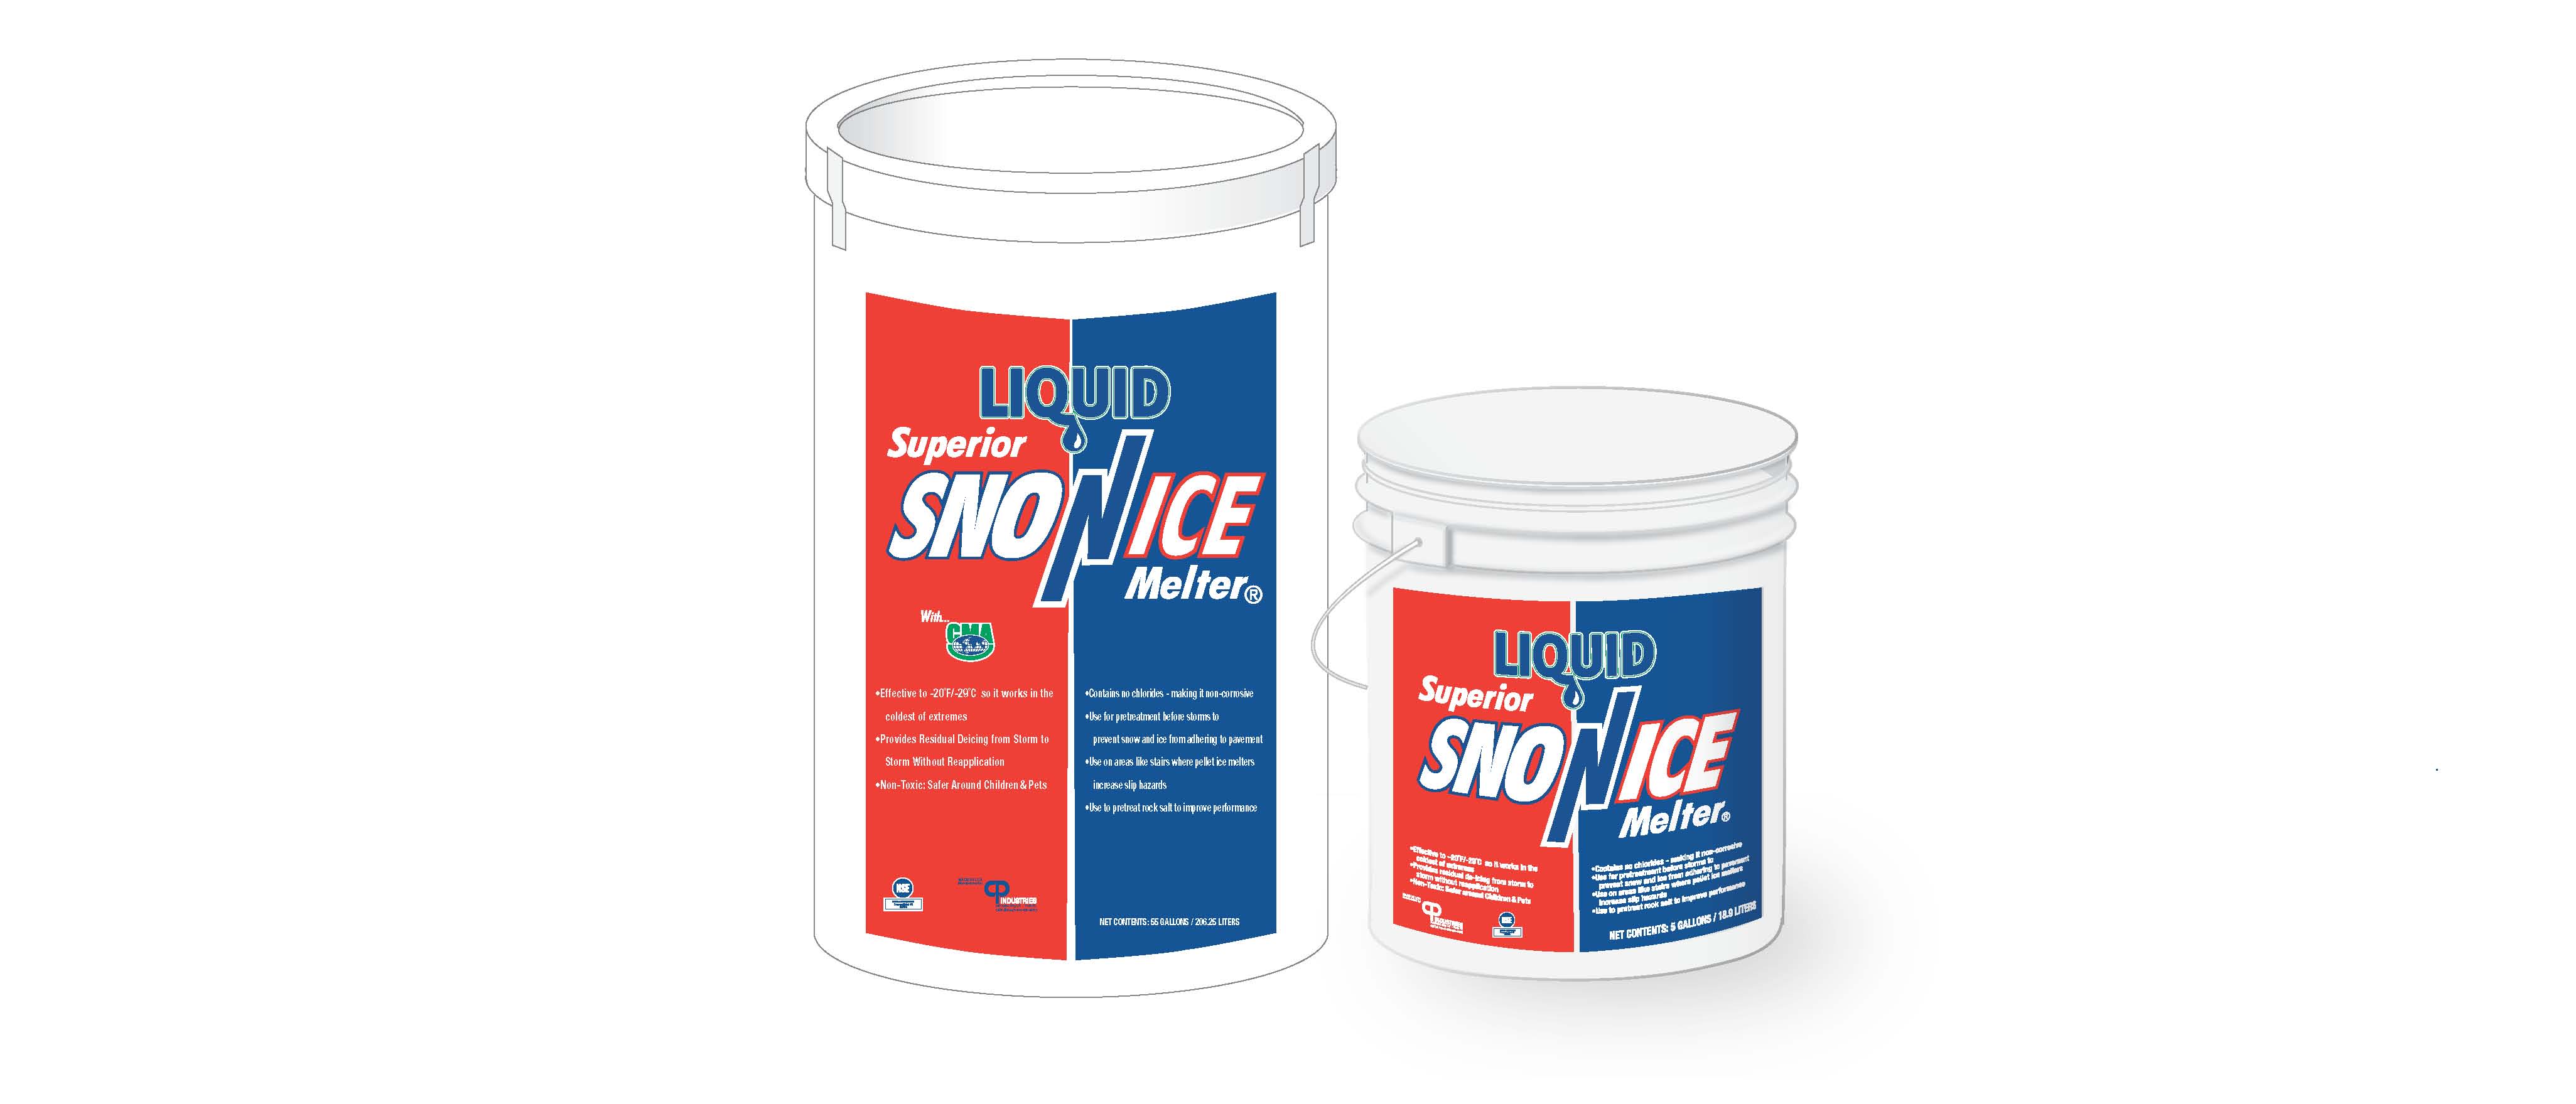 Liquid Superior Sno-N-Ice Melter PDF